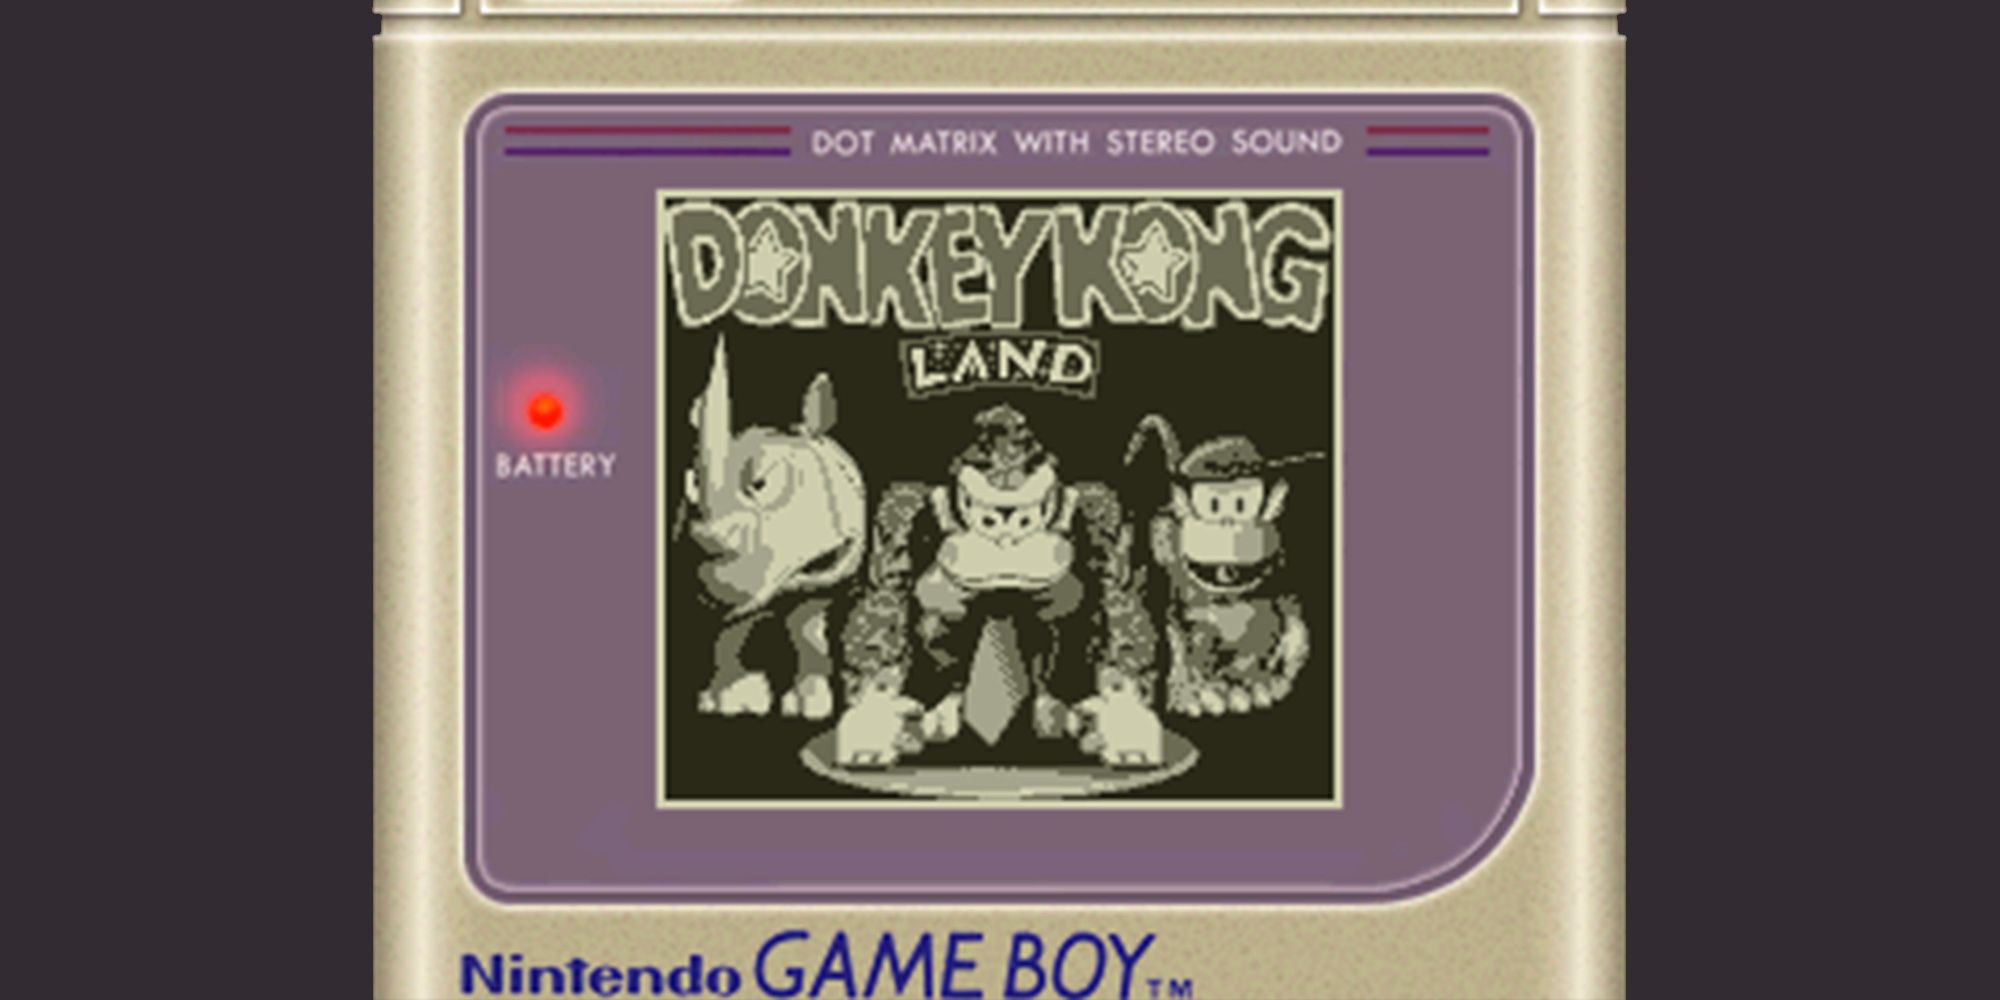 Donkey Kong Land on Gameboy emulator